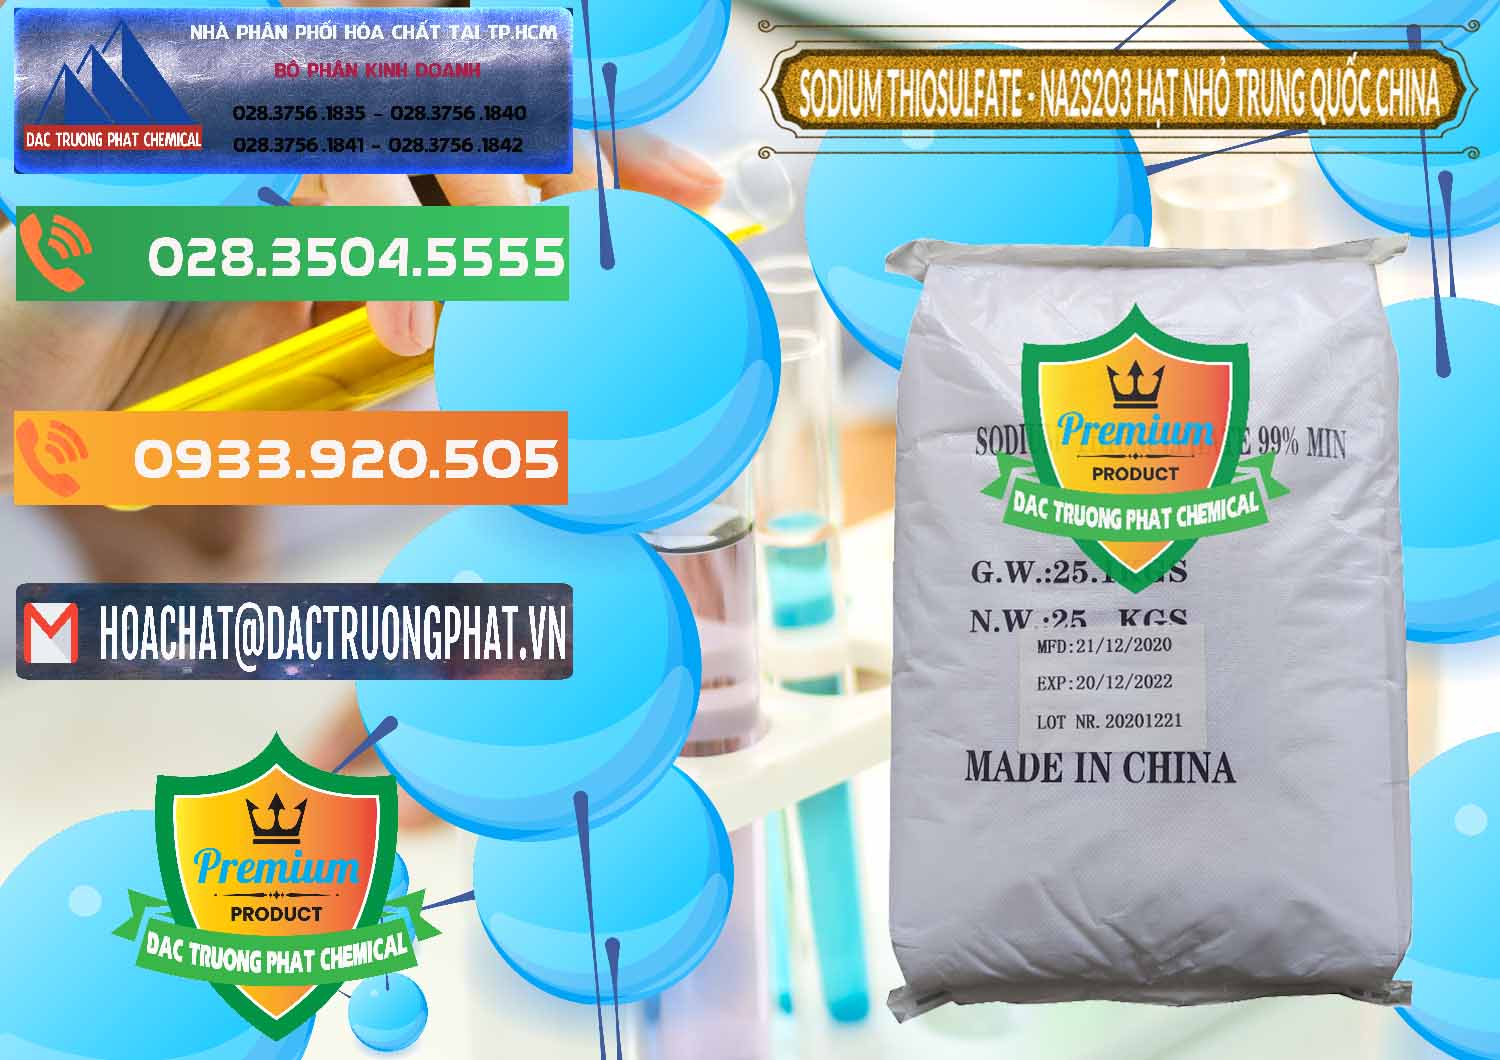 Công ty nhập khẩu _ bán Sodium Thiosulfate - NA2S2O3 Hạt Nhỏ Trung Quốc China - 0204 - Cty chuyên kinh doanh và phân phối hóa chất tại TP.HCM - hoachatxulynuoc.com.vn